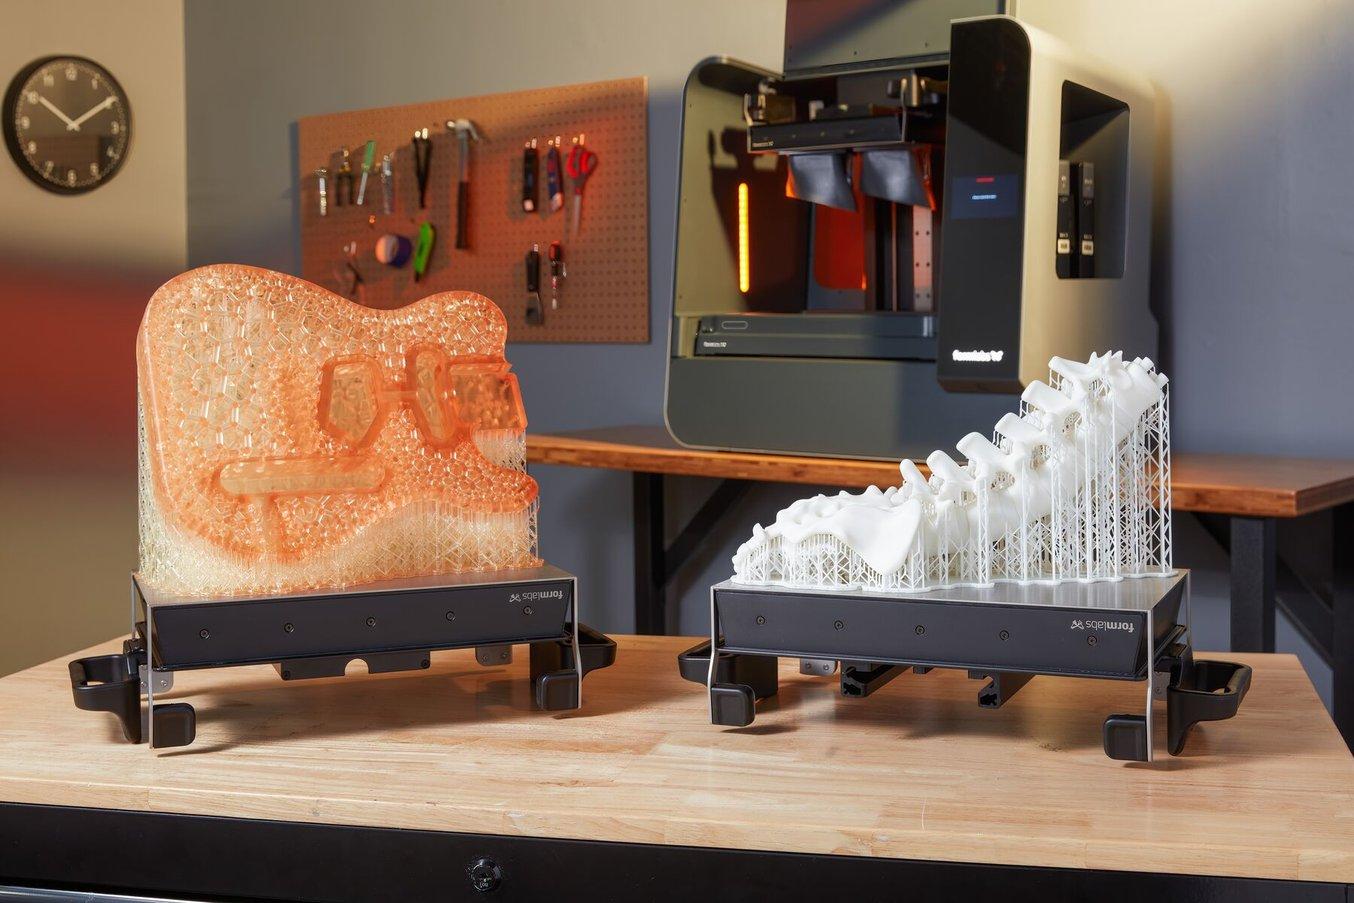 Un cadre de guitare imprimé en 3D et un modèle anatomique de la colonne vertébrale imprimé en 3D sur des plateformes de fabrication sont posés sur une table devant une imprimante 3D stéréolithographique (SLA) Form 3L.